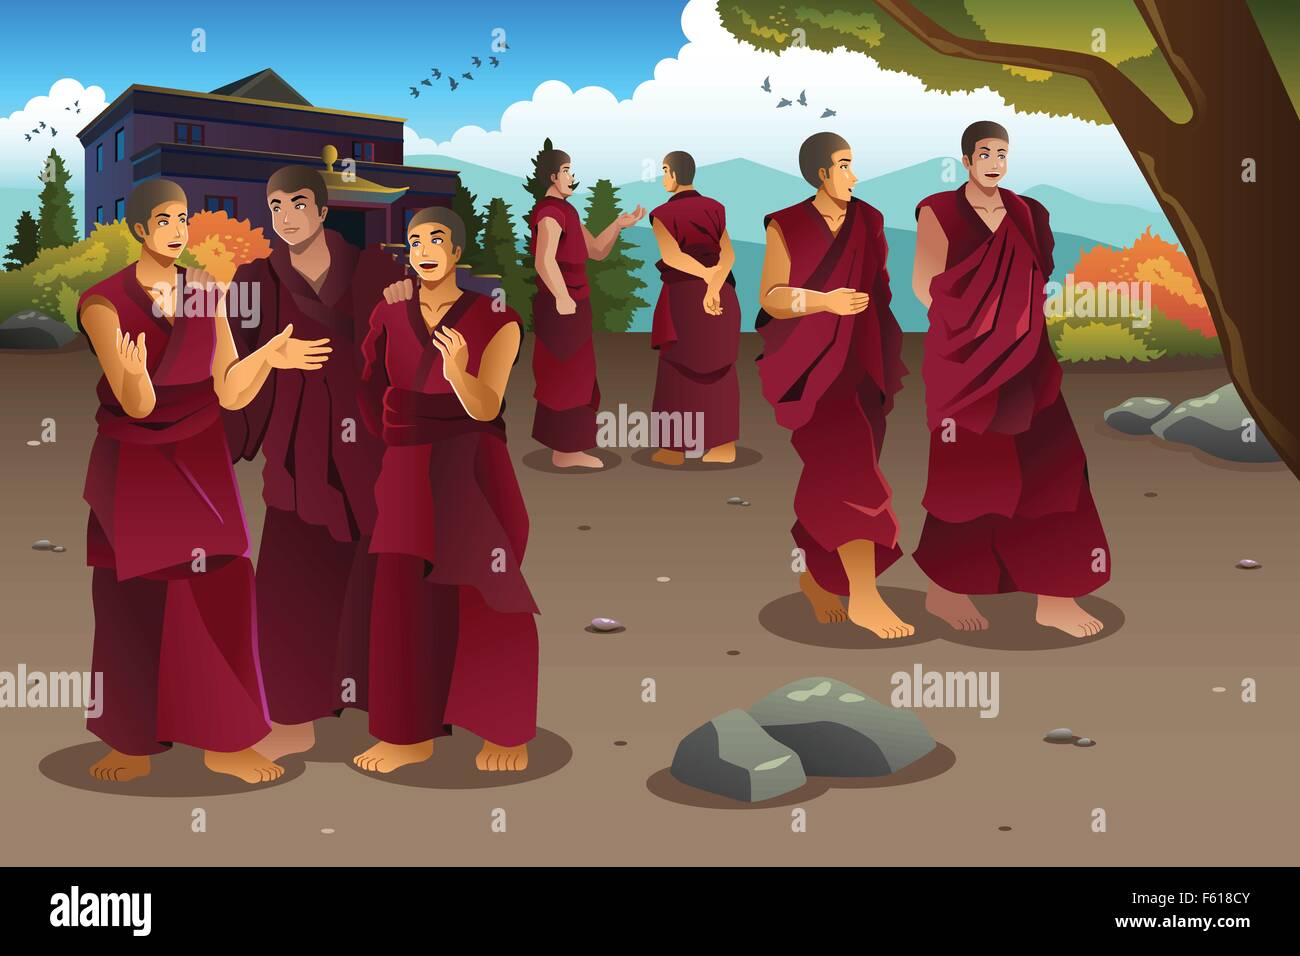 Eine Vektor-Illustration von buddhistischen Mönchen in Tibet Tempel Stock Vektor